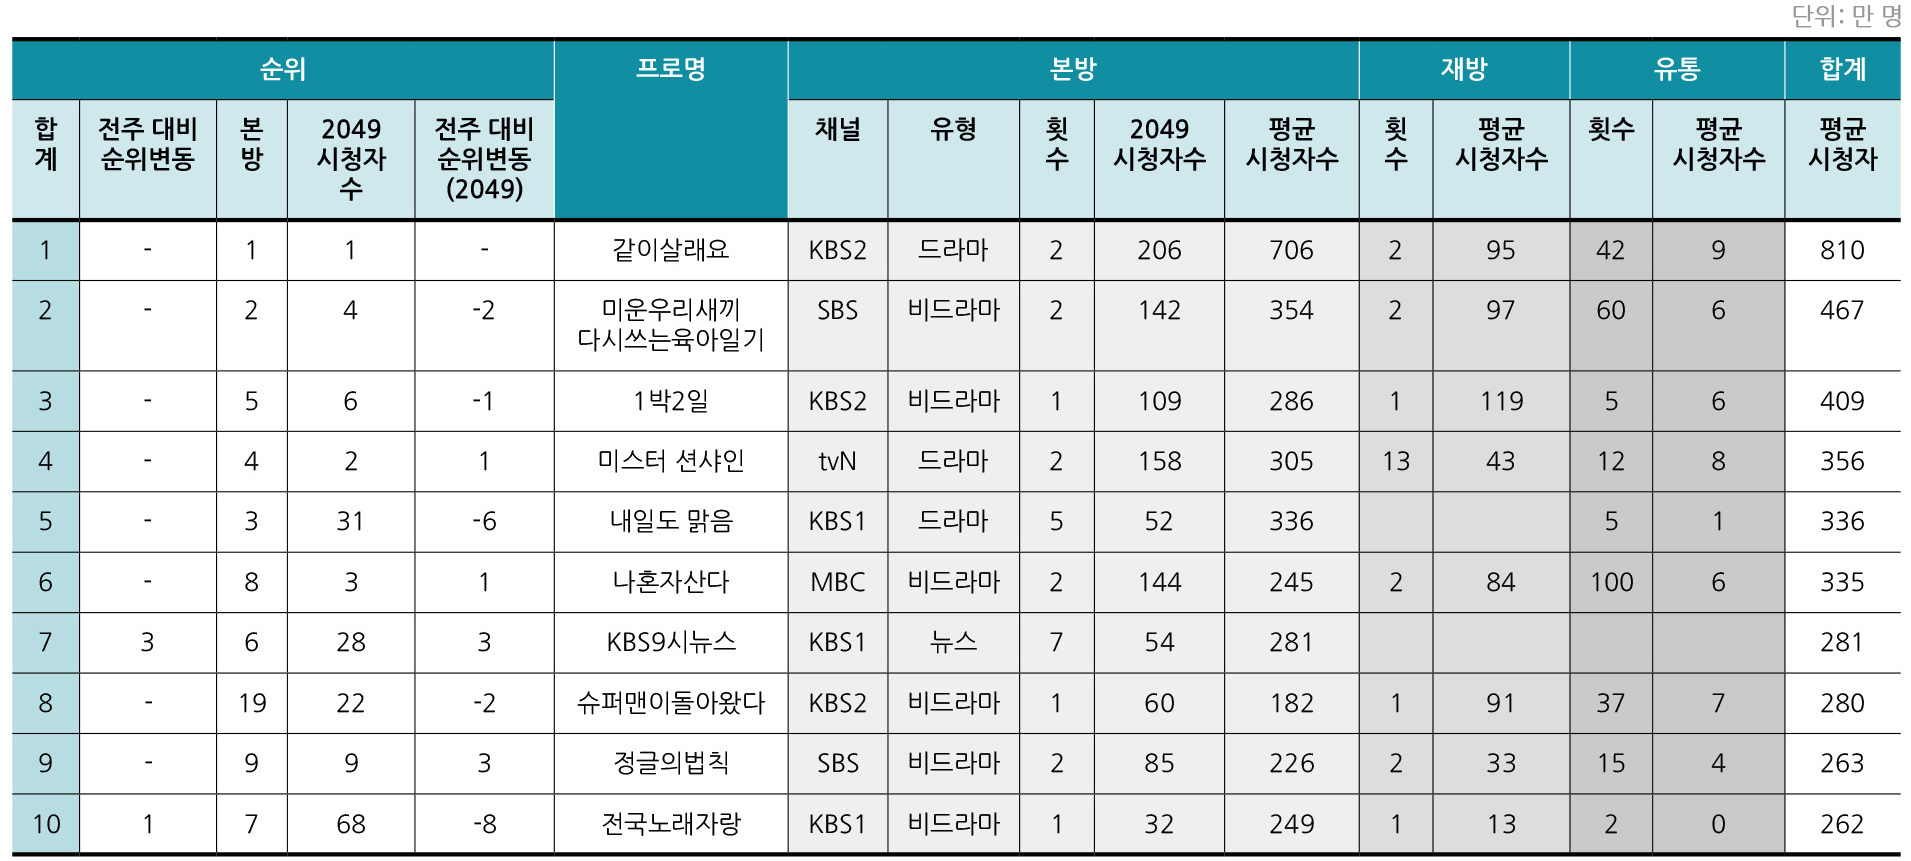 PIE-TV주간 7월마지막주 Top10 리스트